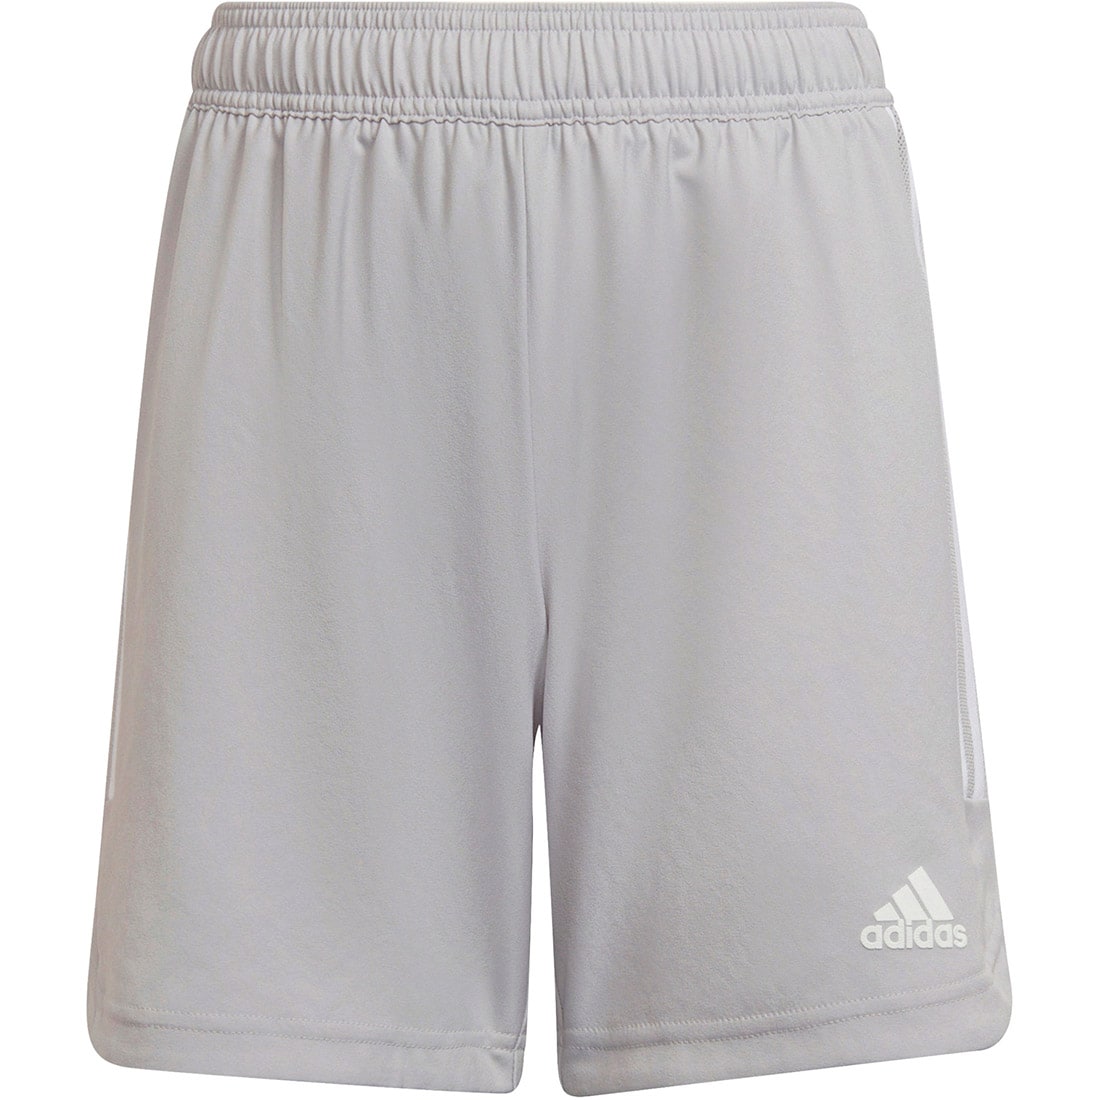 Adidas Kinder MD Shorts Condivo 22 grau-weiß